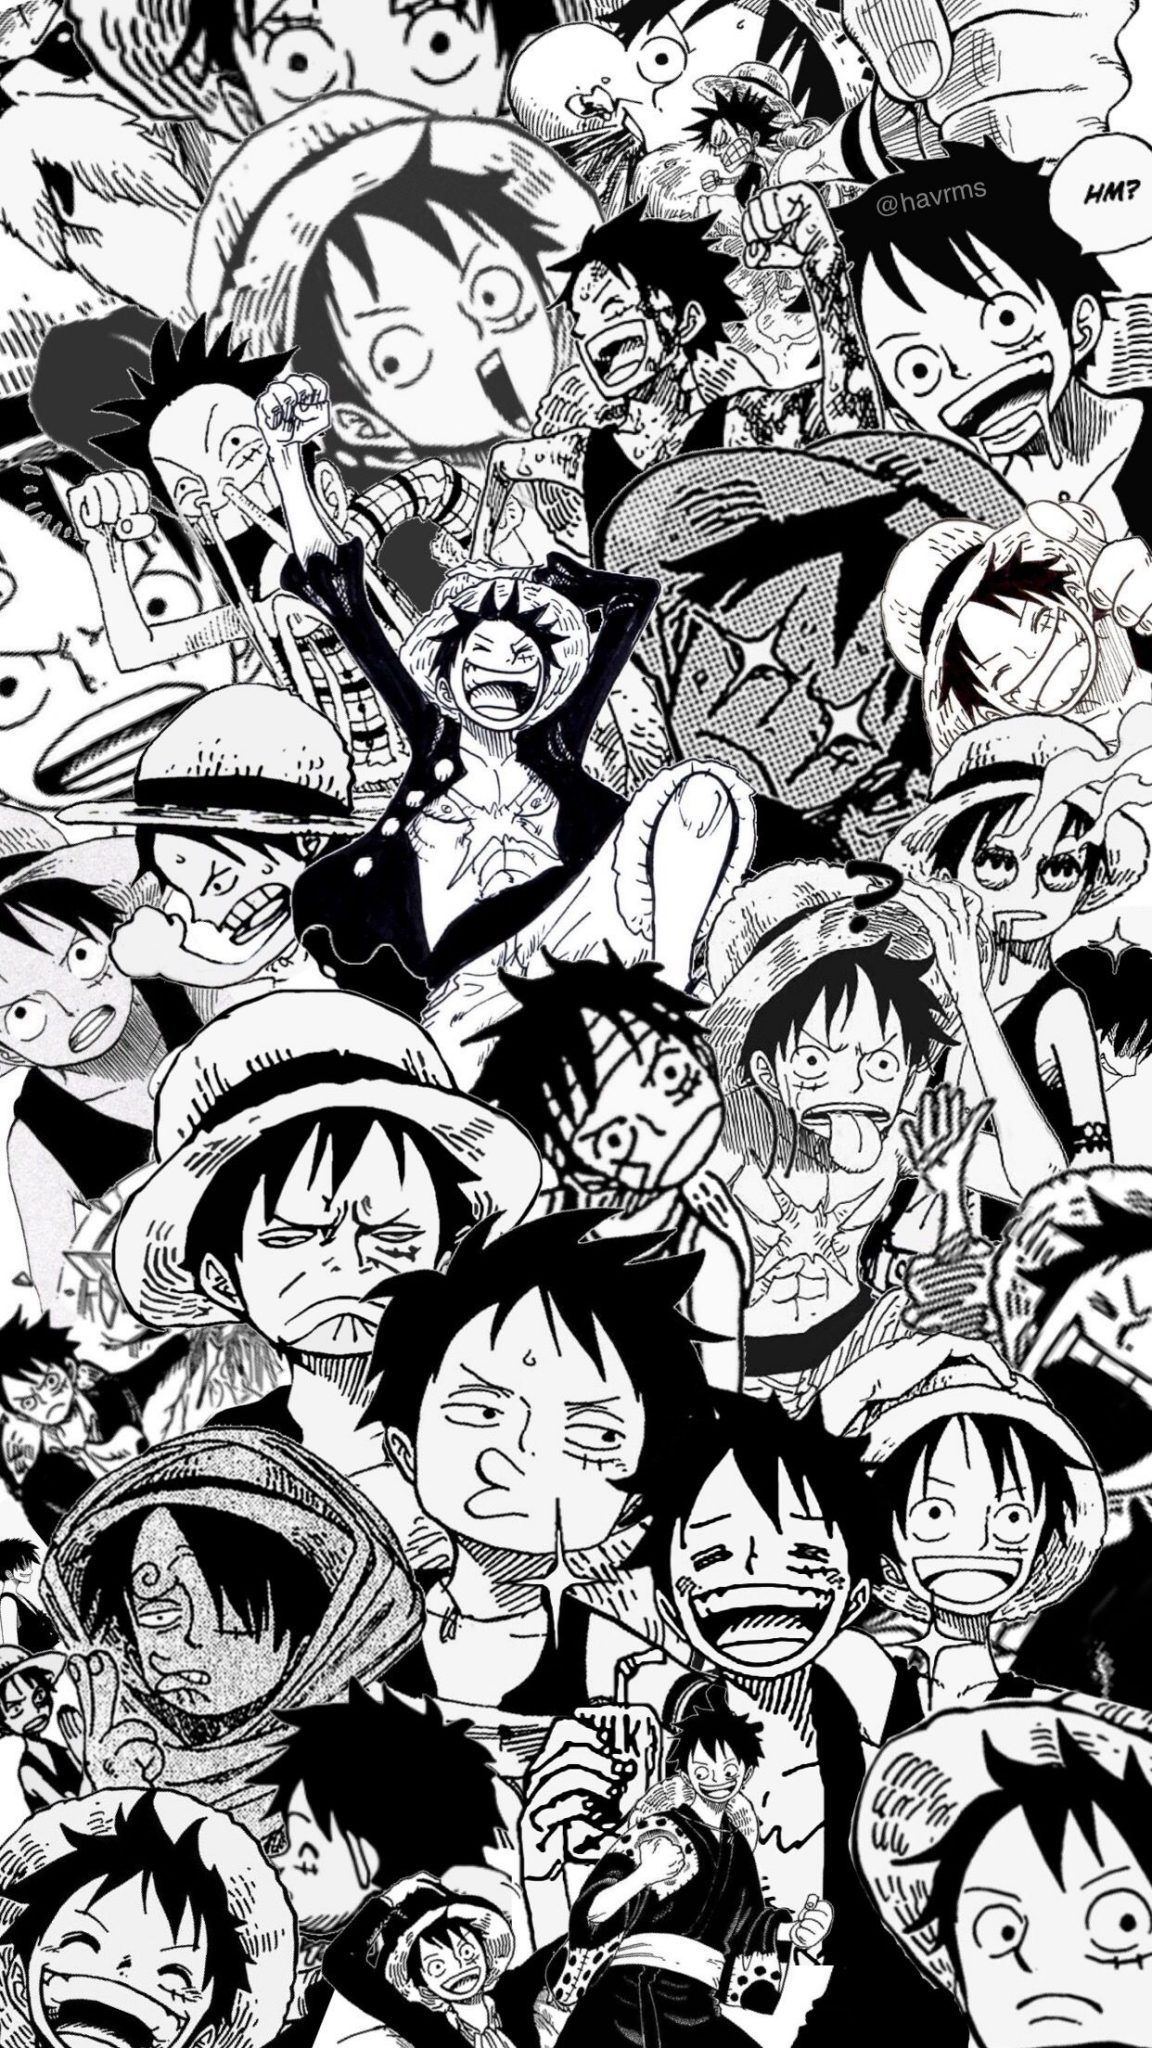 Bạn muốn sử dụng một bức ảnh nền mang đậm tính artistique? Hình nền One Piece đen trắng chính là lựa chọn hoàn hảo cho bạn. Với phong cách mặt trơn và ánh sáng tối giúp nổi bật nhân vật chính Luffy, bức ảnh chắc chắn sẽ mang lại cho bạn một không gian làm việc đầy nghệ thuật và sáng tạo.